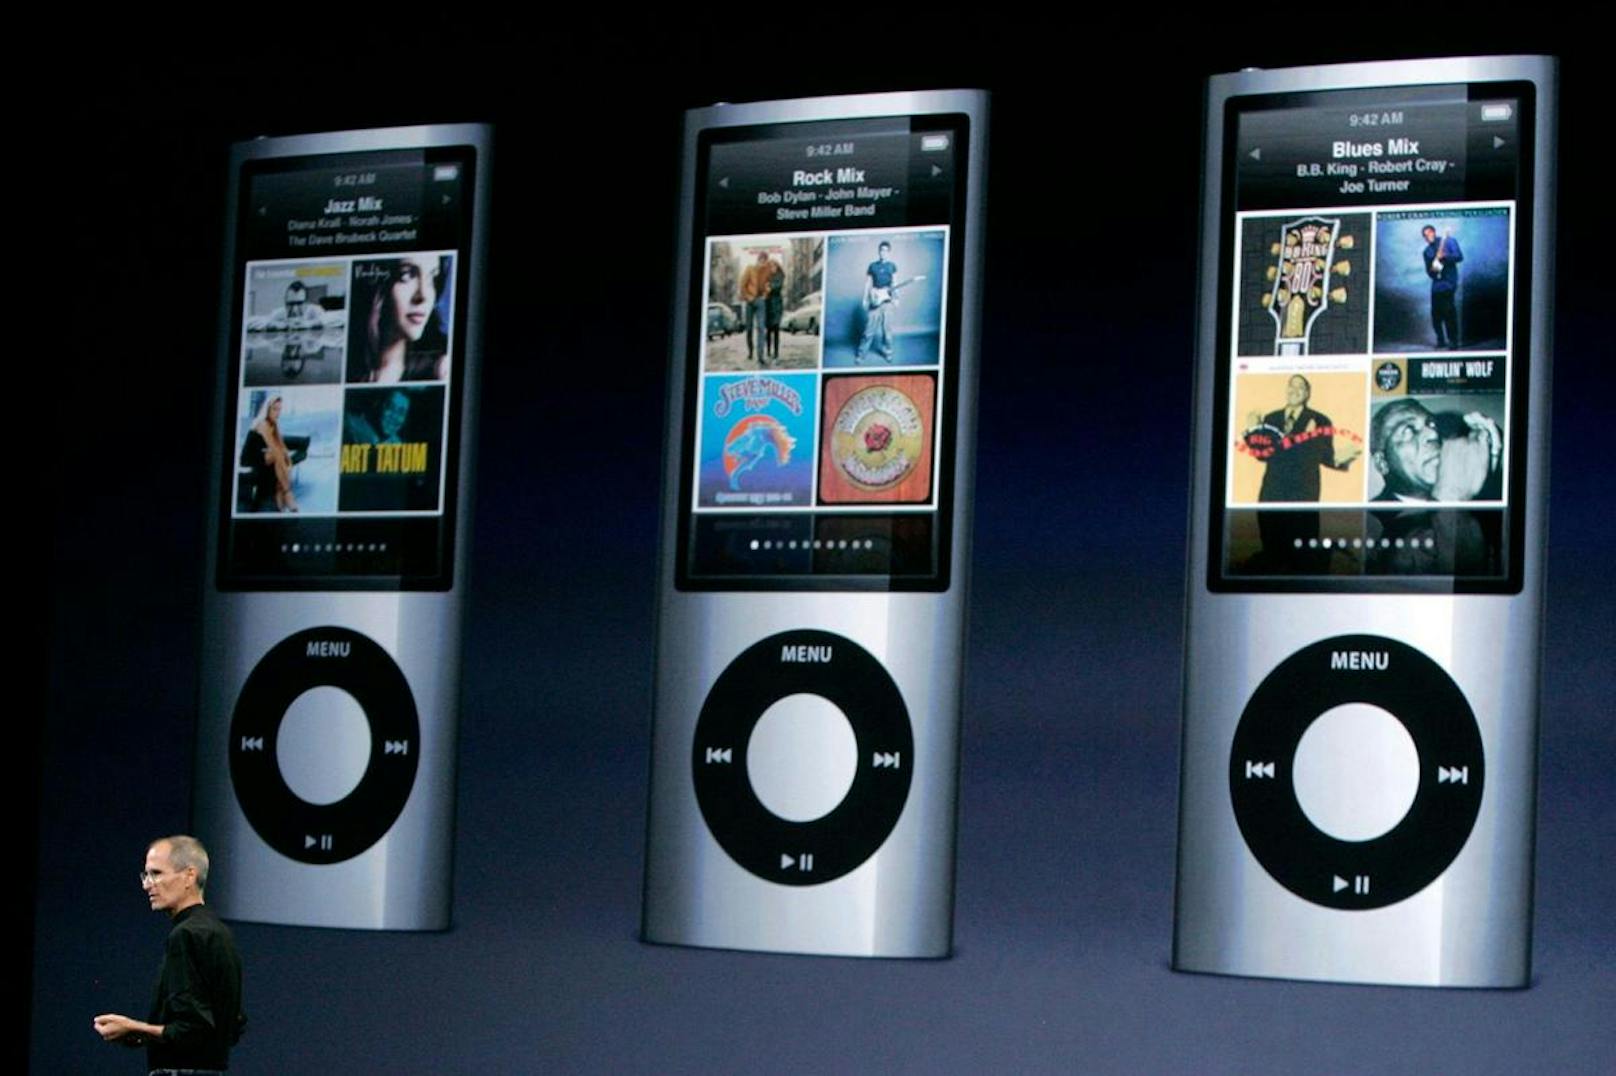 Genau, an einen iPod von Apple. Der iPhone-Hersteller – hier mit dem verstorbenen CEO Steve Jobs im Bild – hat viele seiner MP3-Player mit einer ringförmigen Bedienung gebaut.